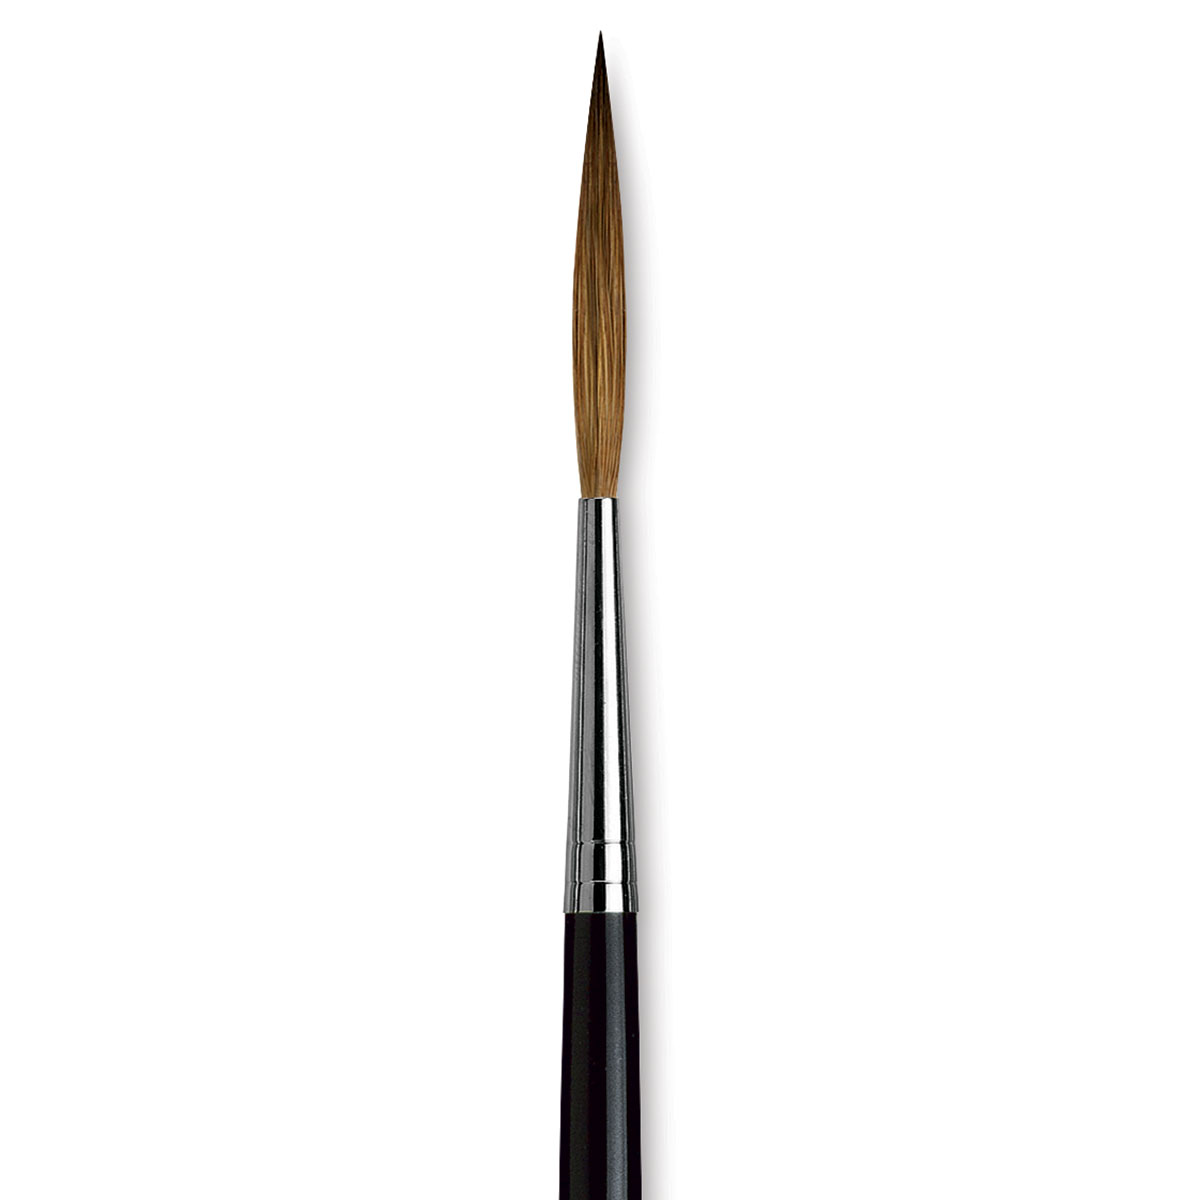 Da Vinci Kolinsky Red Sable Brush - Extra Long Pointed Liner, Long Handle, Size 10